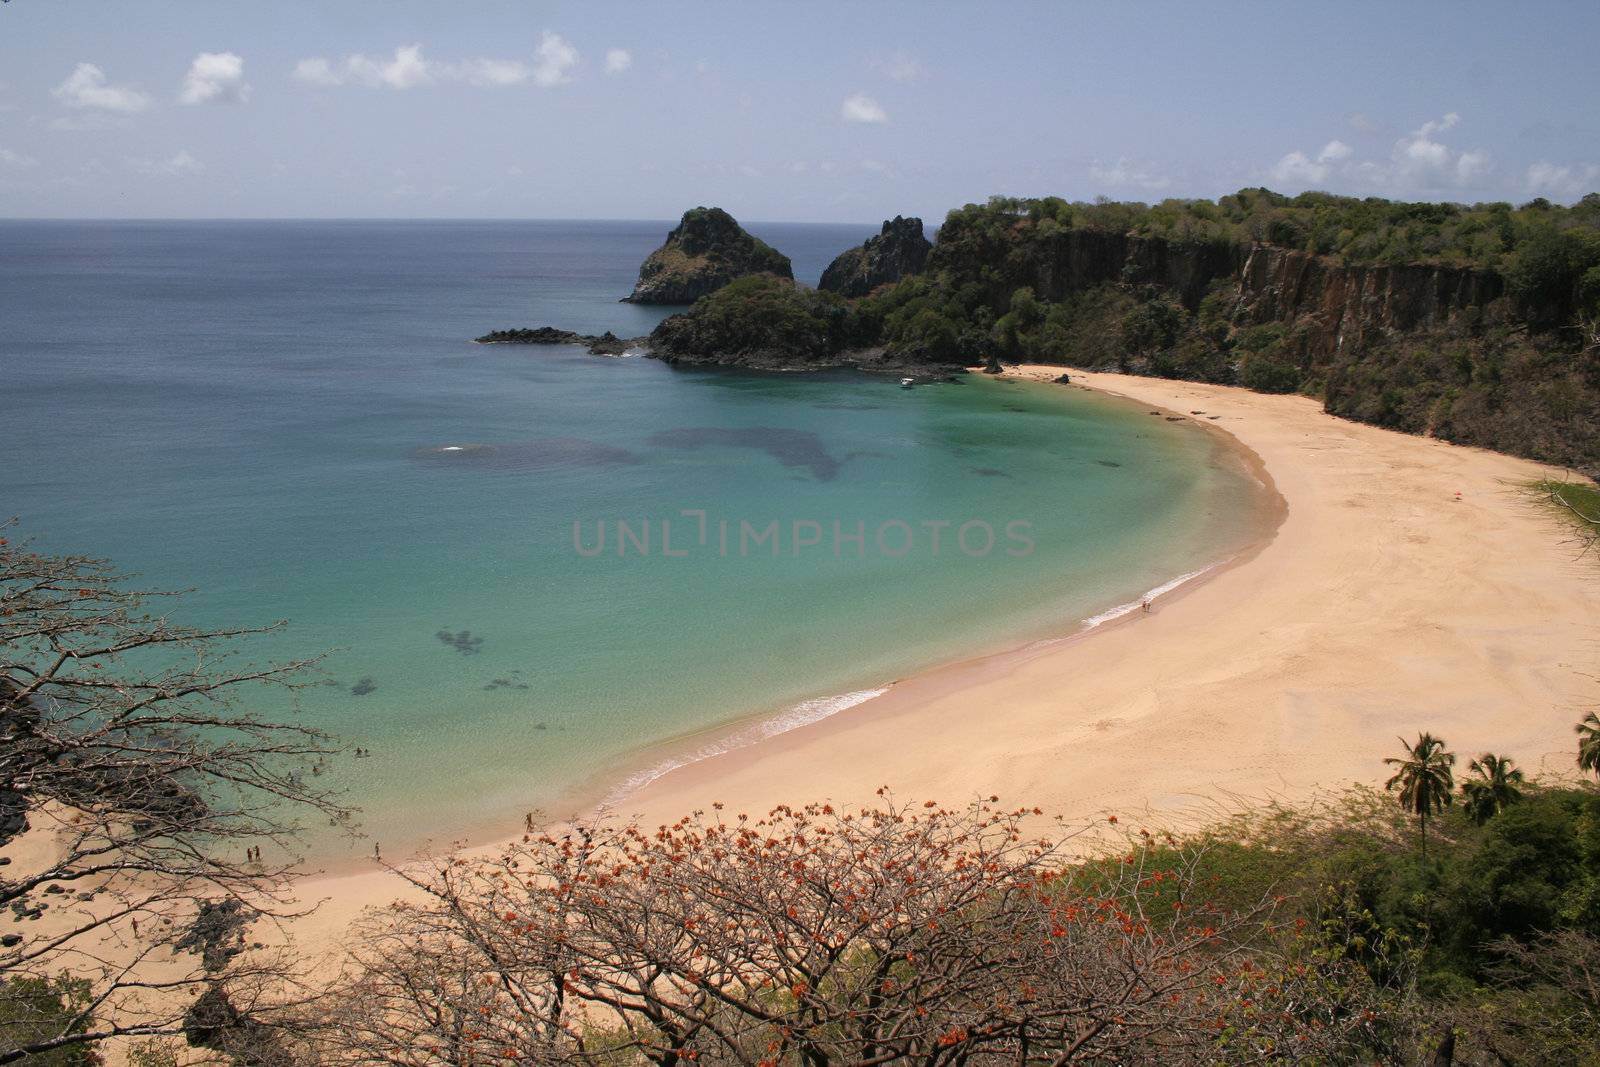 The "Sancho Bay" in Fernando de Noronha, a paradisiac island off the coast of Brazil.